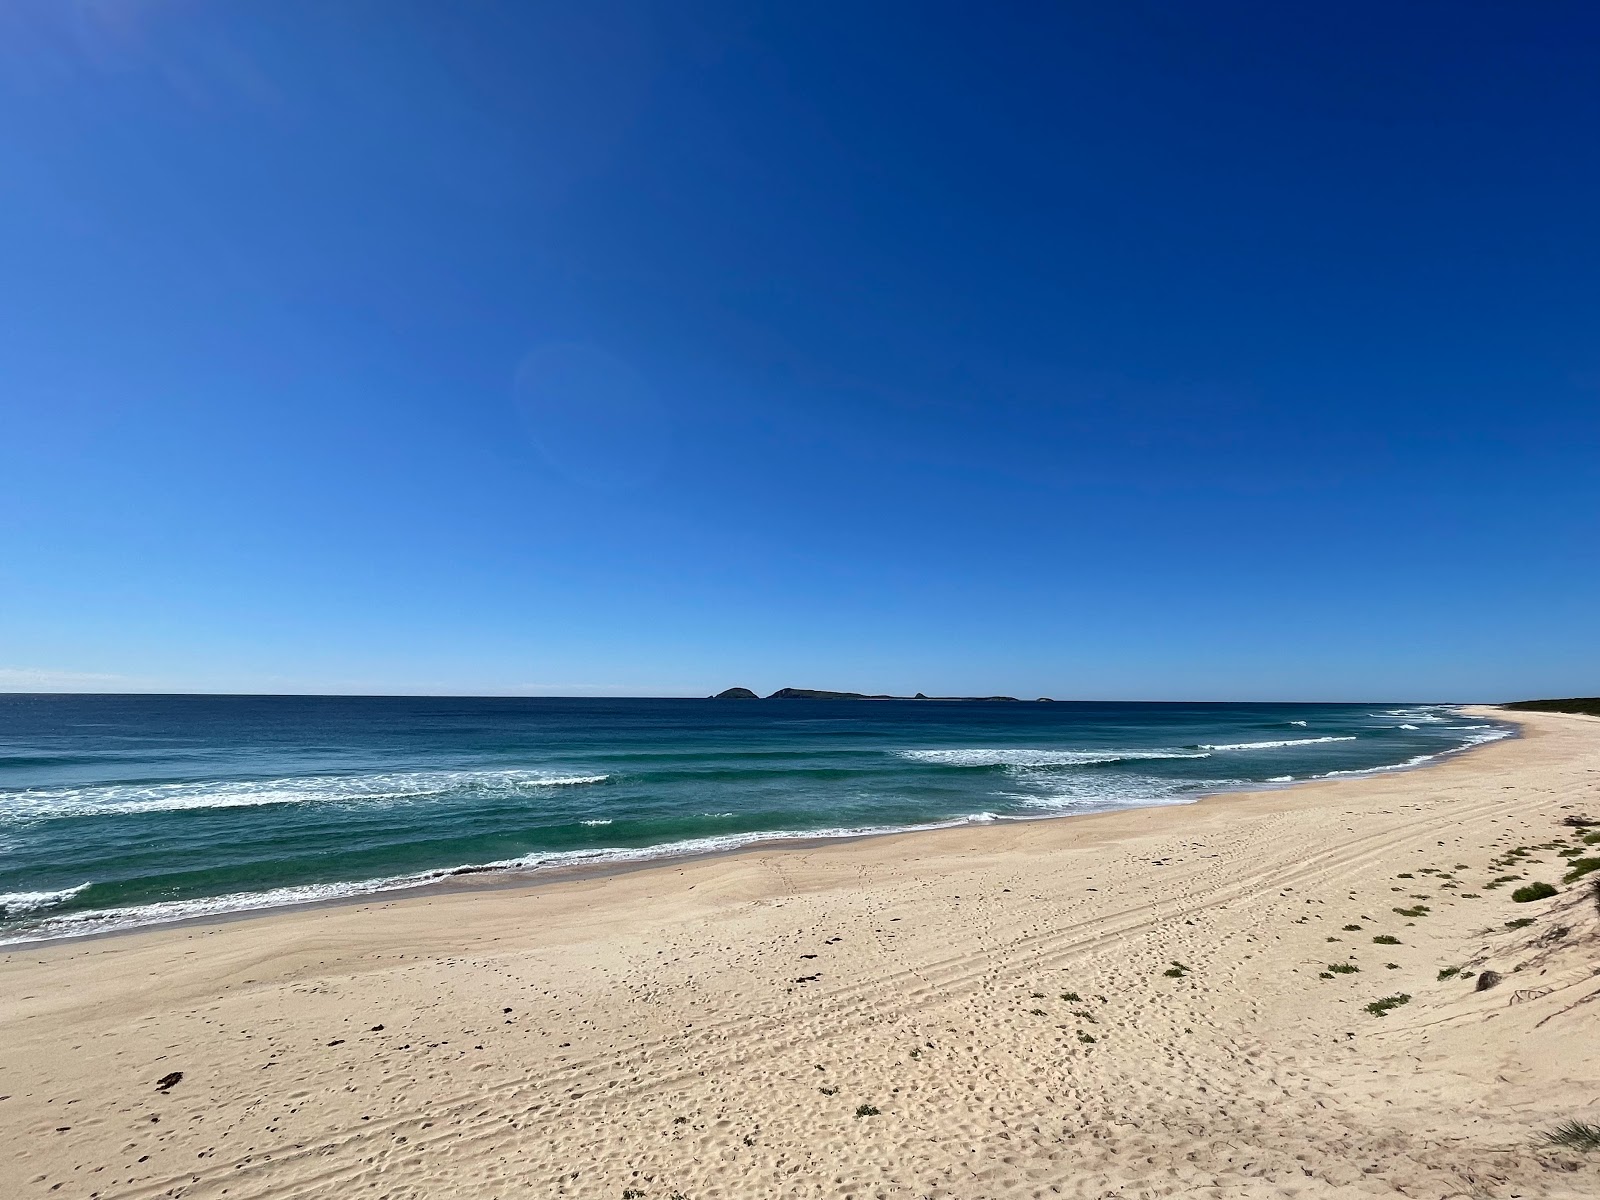 Zdjęcie Mungo Beach z powierzchnią jasny, drobny piasek